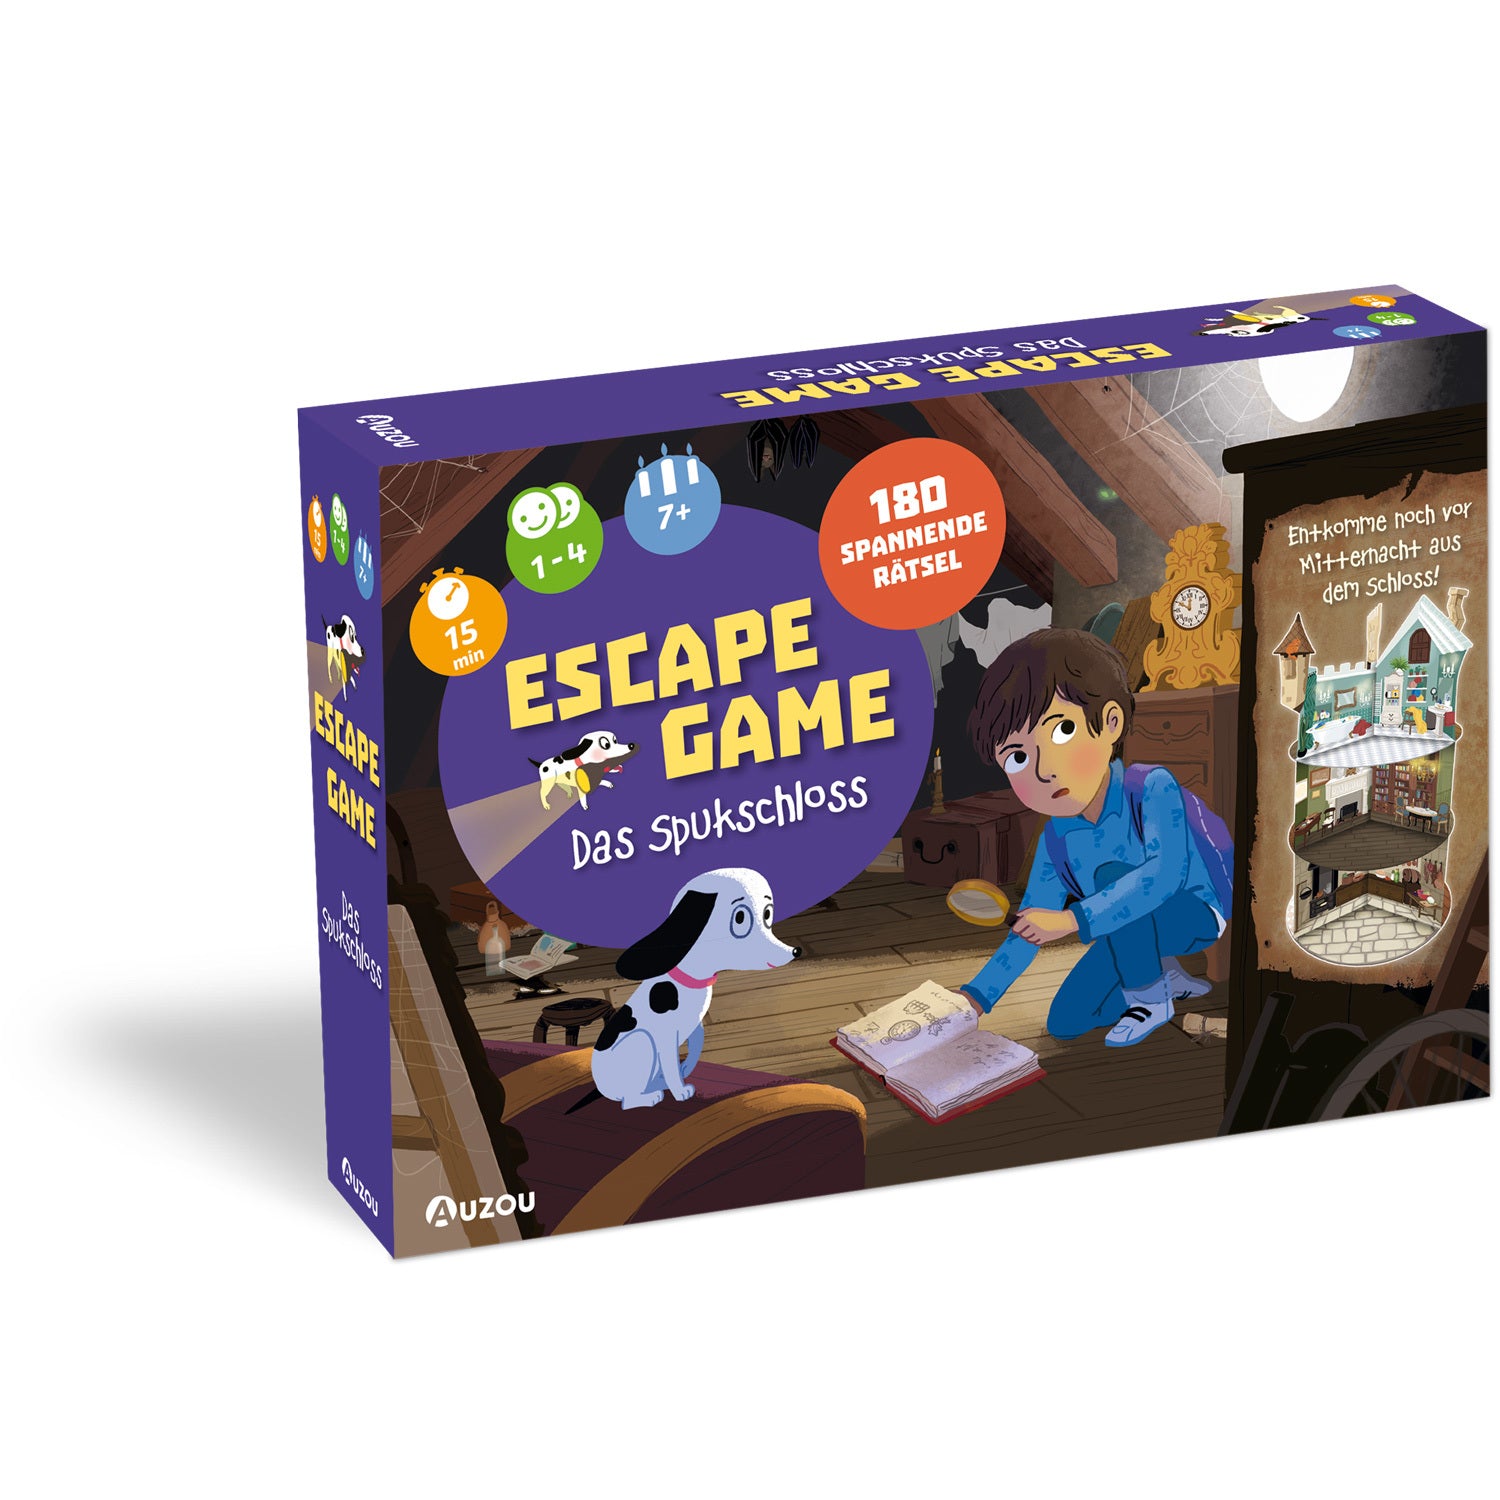 Escape Game - Das Spukschloss